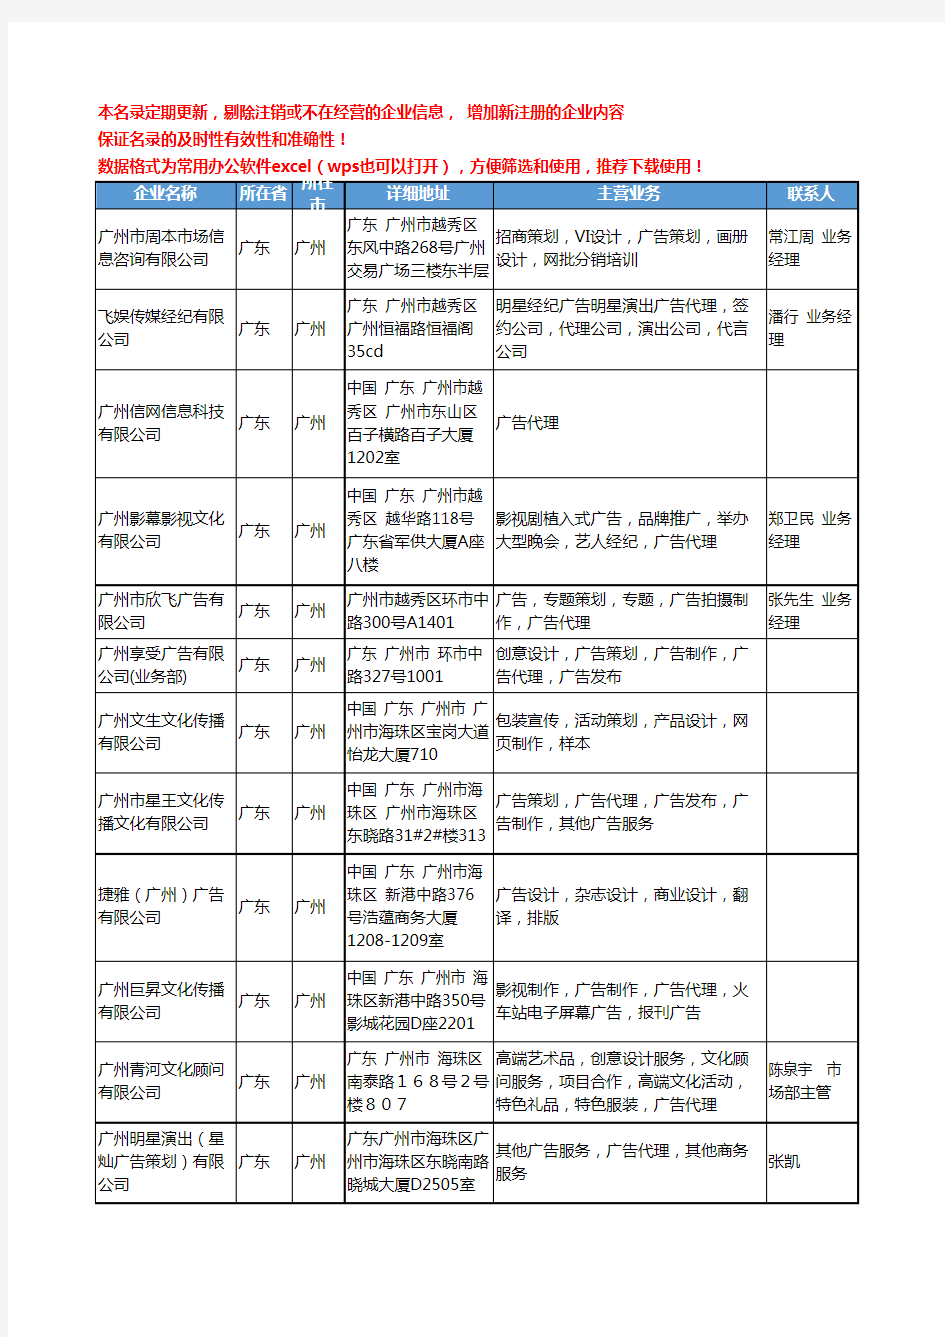 2020新版广东省广告代理工商企业公司名录名单黄页联系方式大全88家